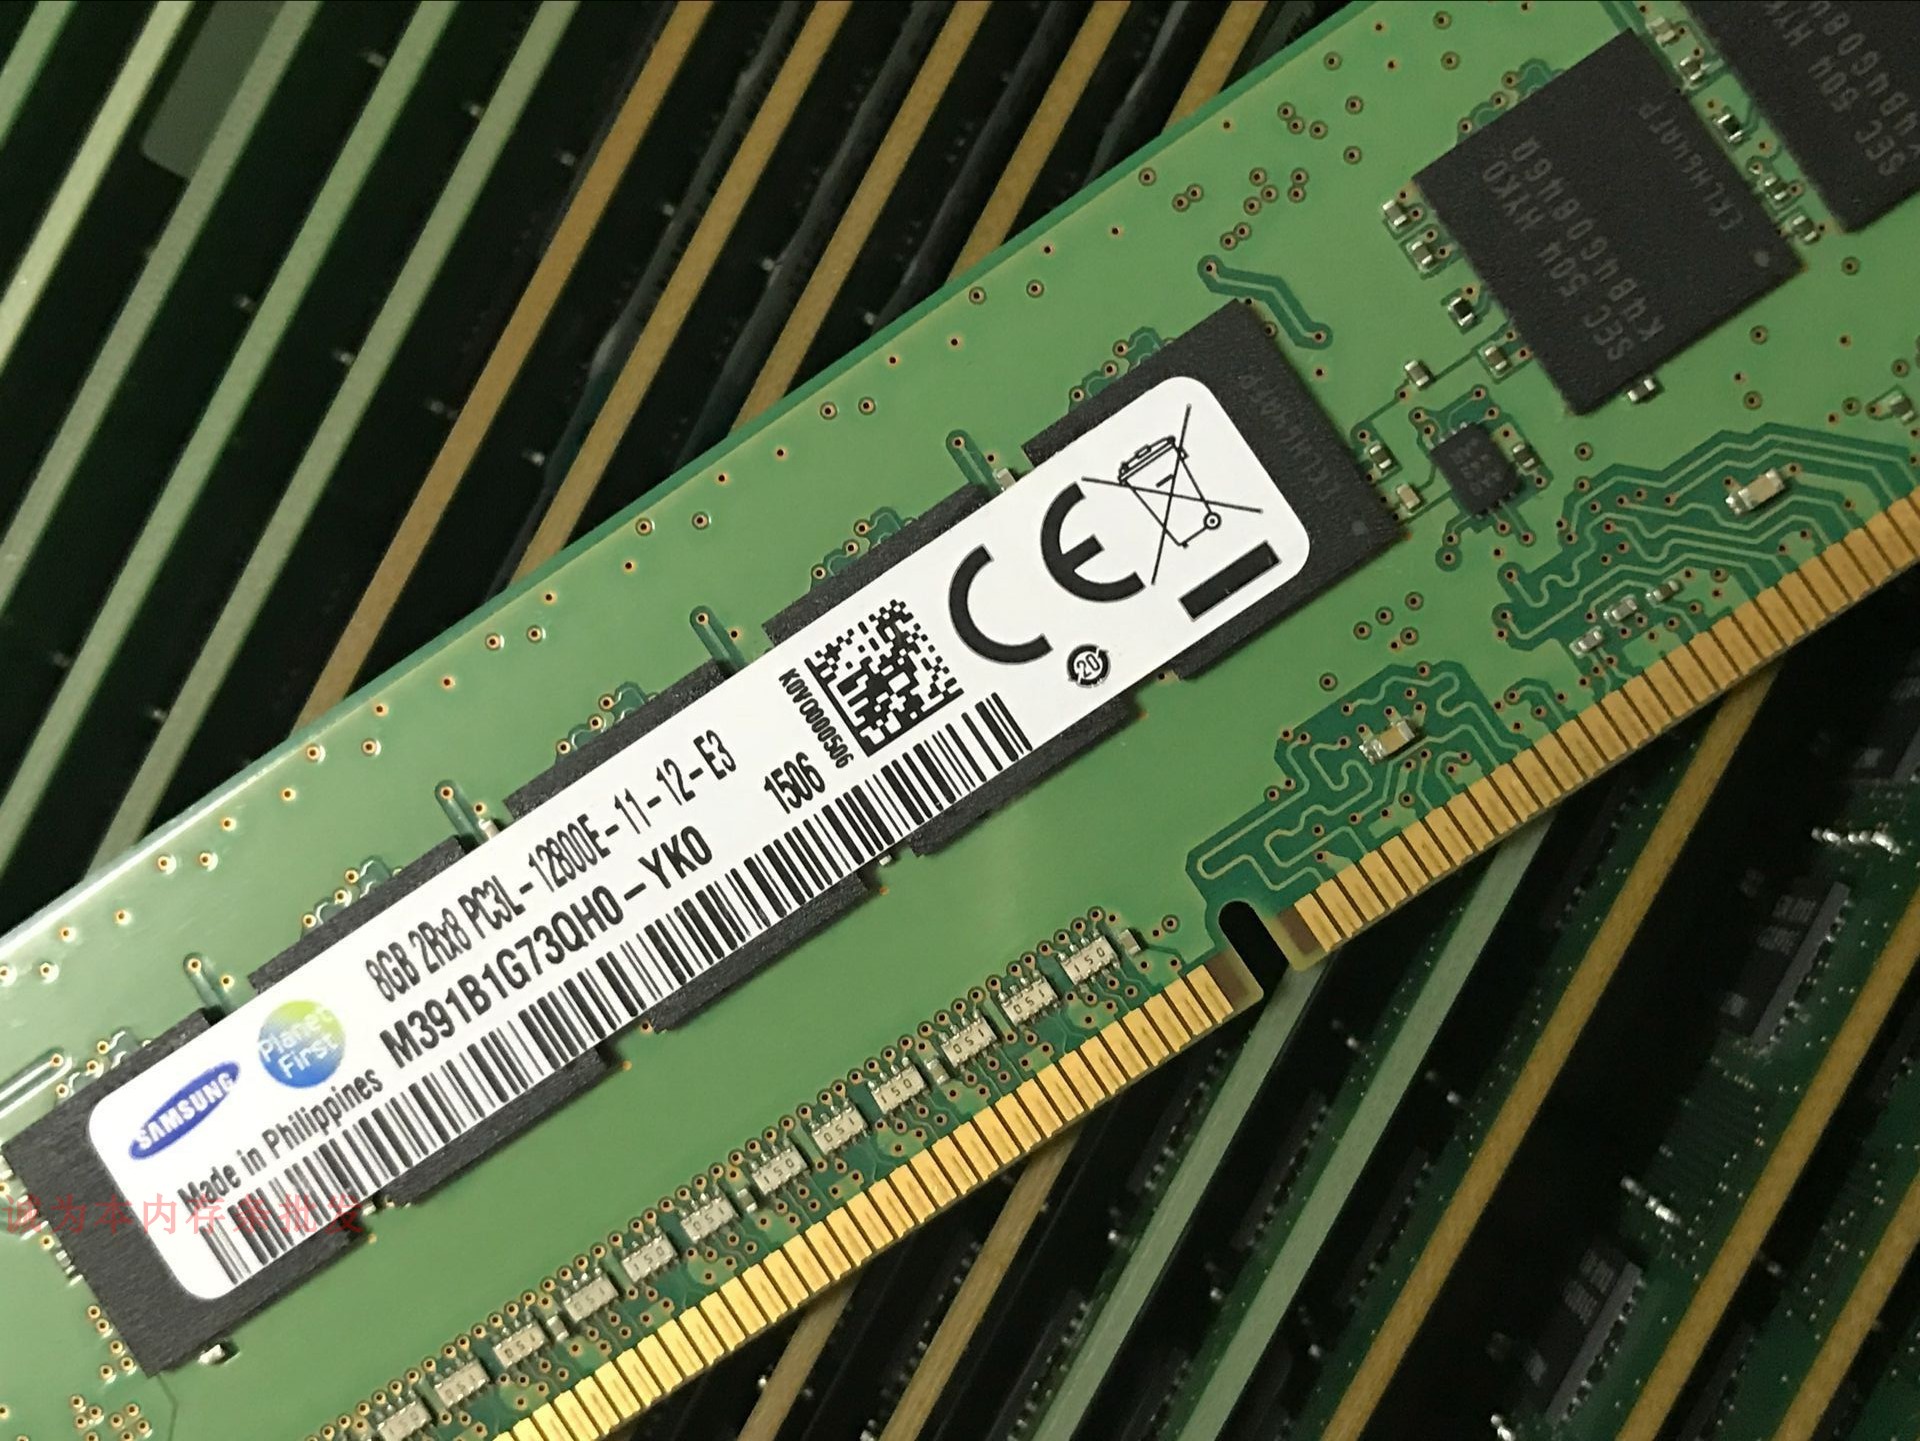 首次目睹 DDR3 内存插槽实物图，感受电脑关键部件的魅力  第4张